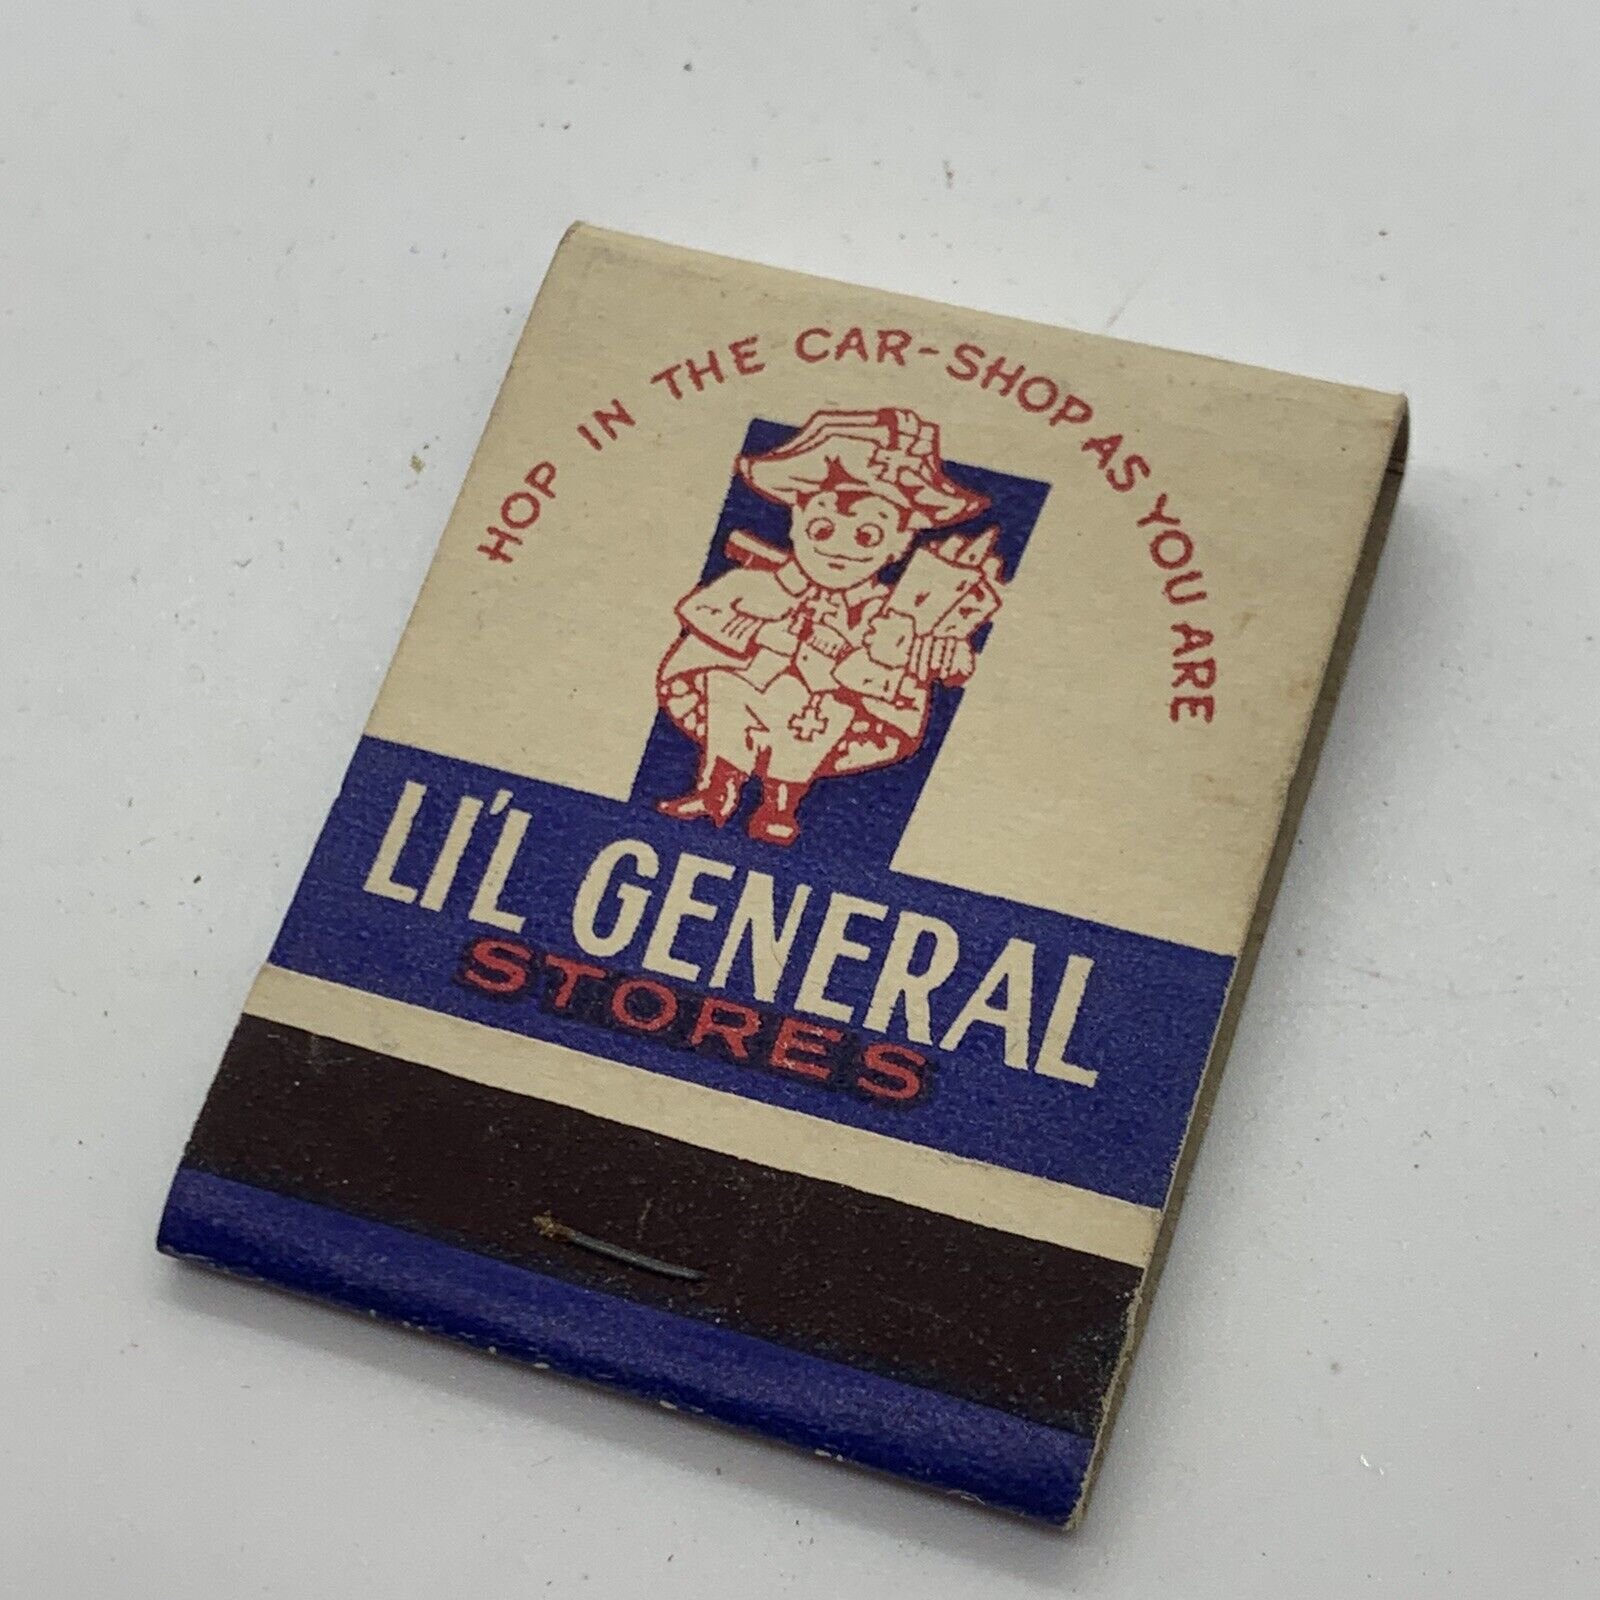 Vintage Lil General Stores Matchbook Cover Unstruck